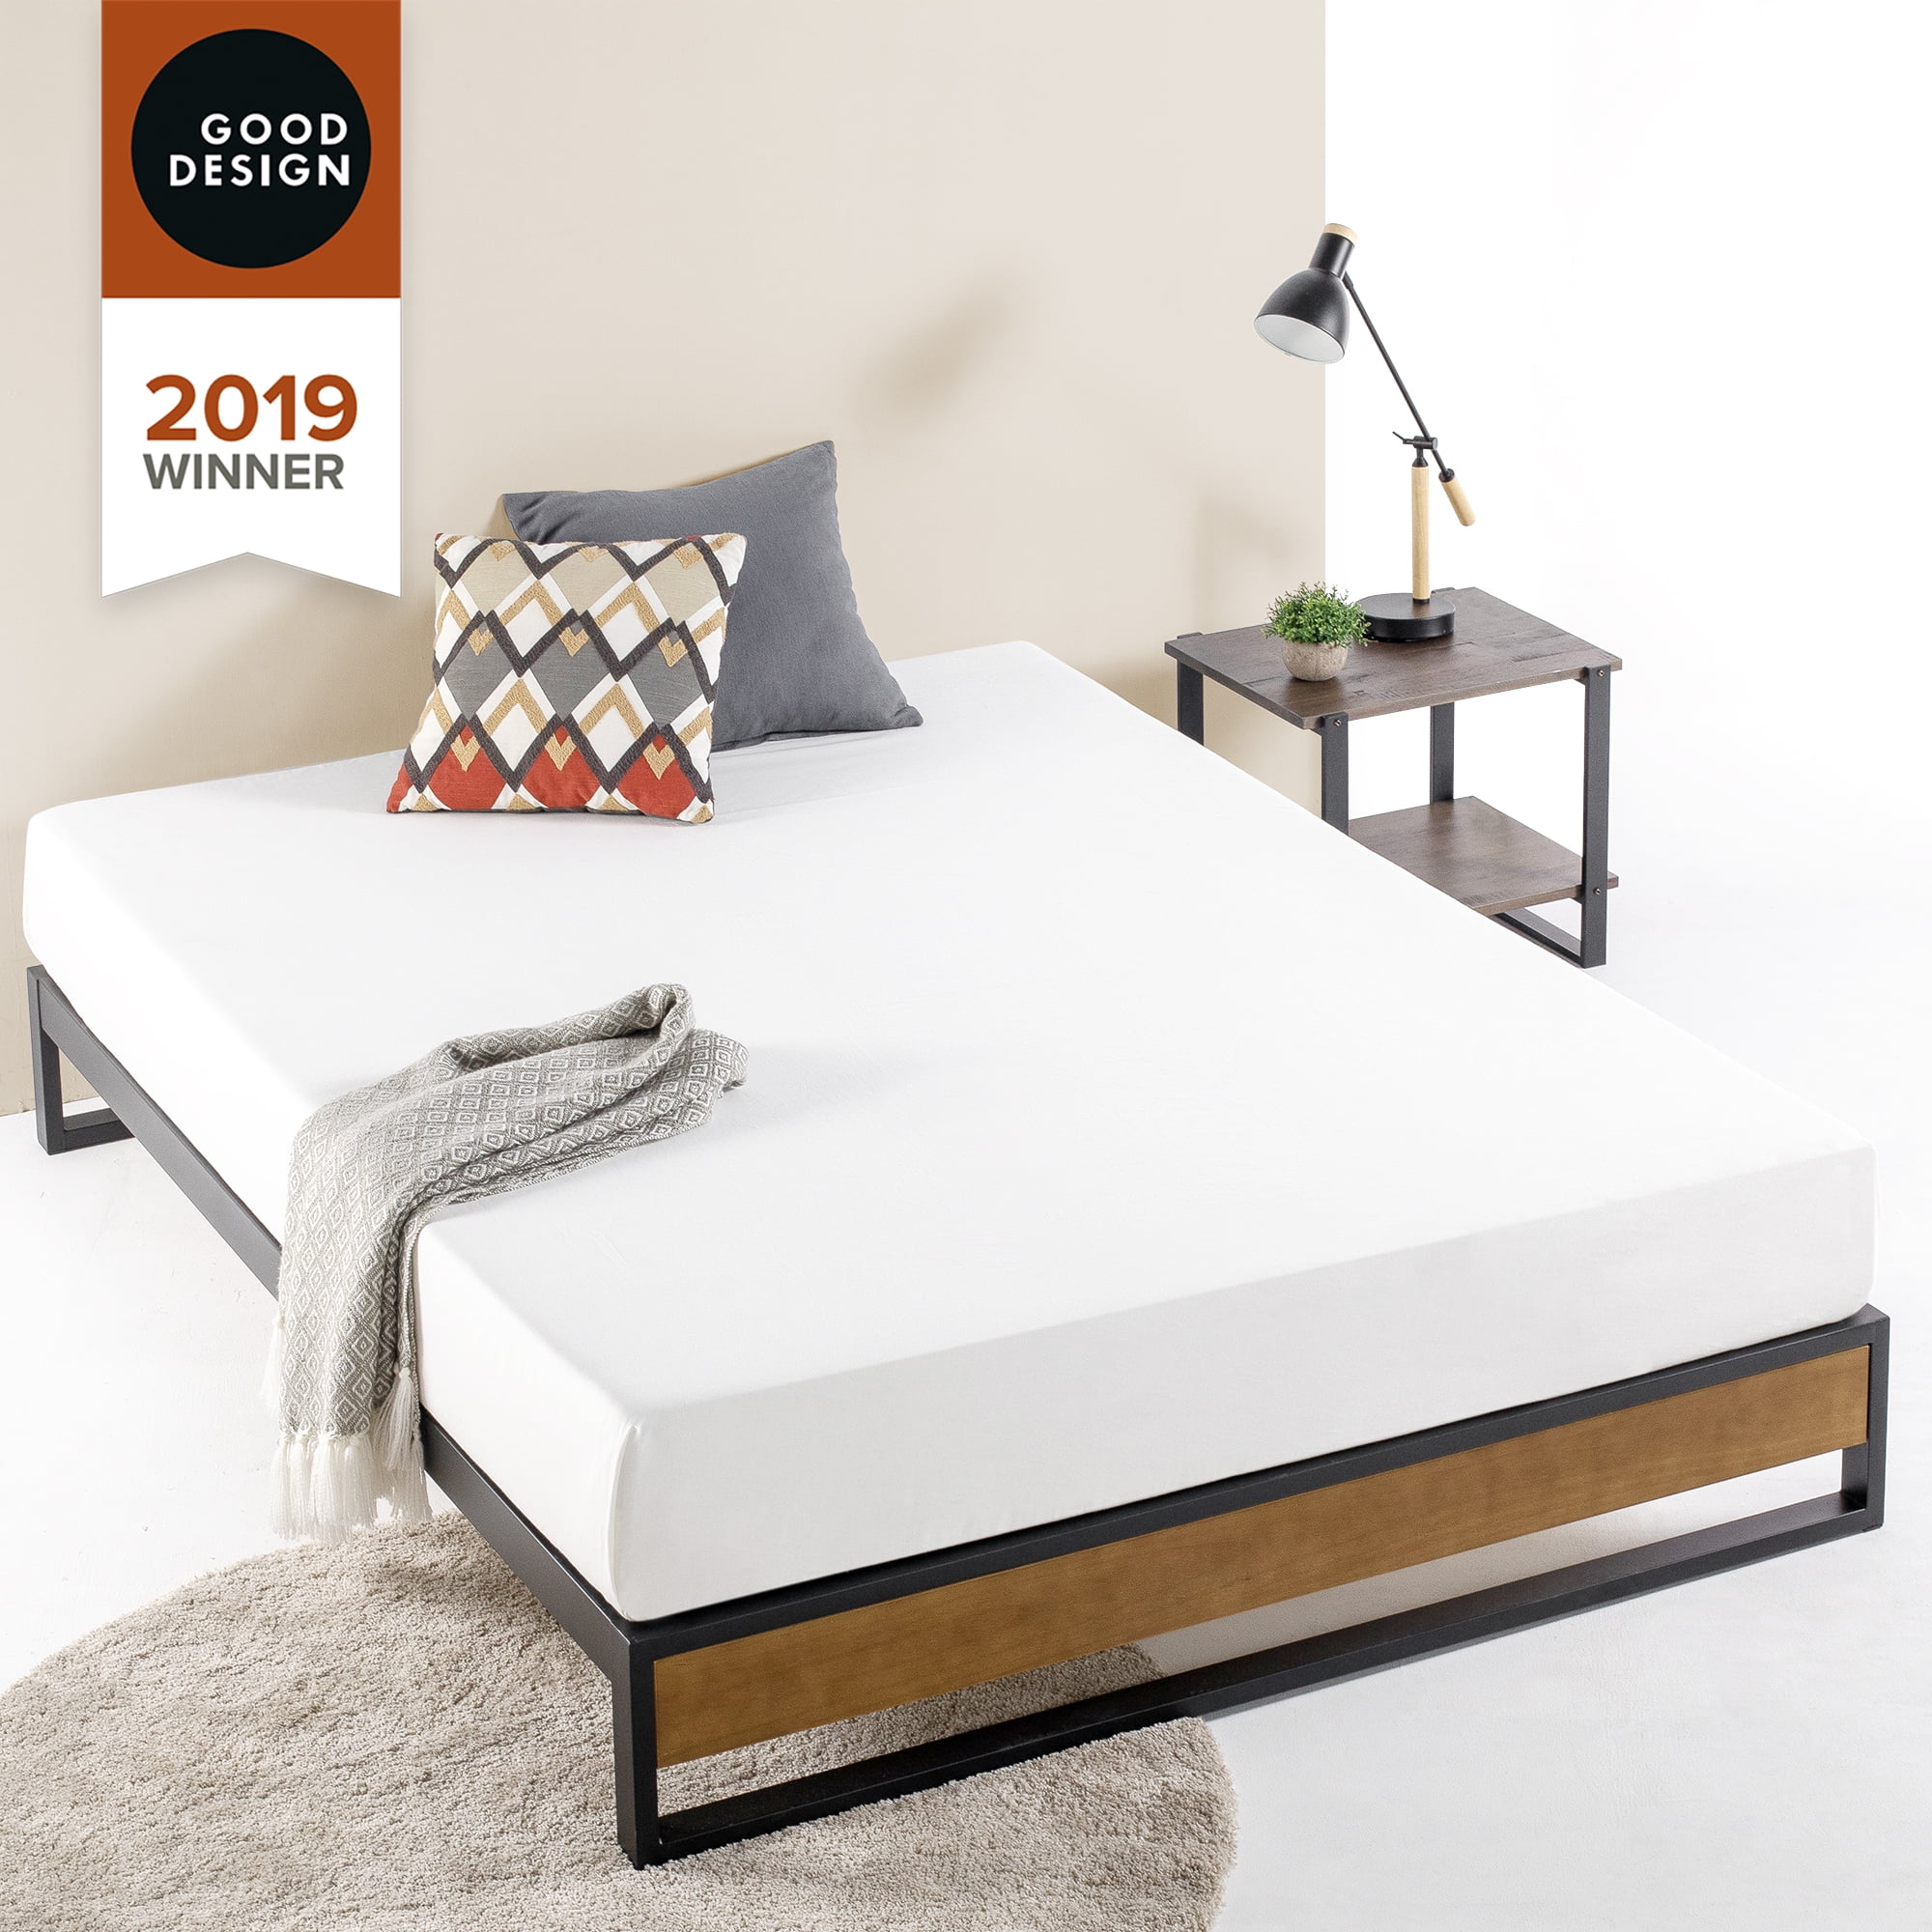 Zinus Good Design Winner Suzanne 10, Priage By Zinus Antique Espresso Solid Wood Platform Bed With Headboard